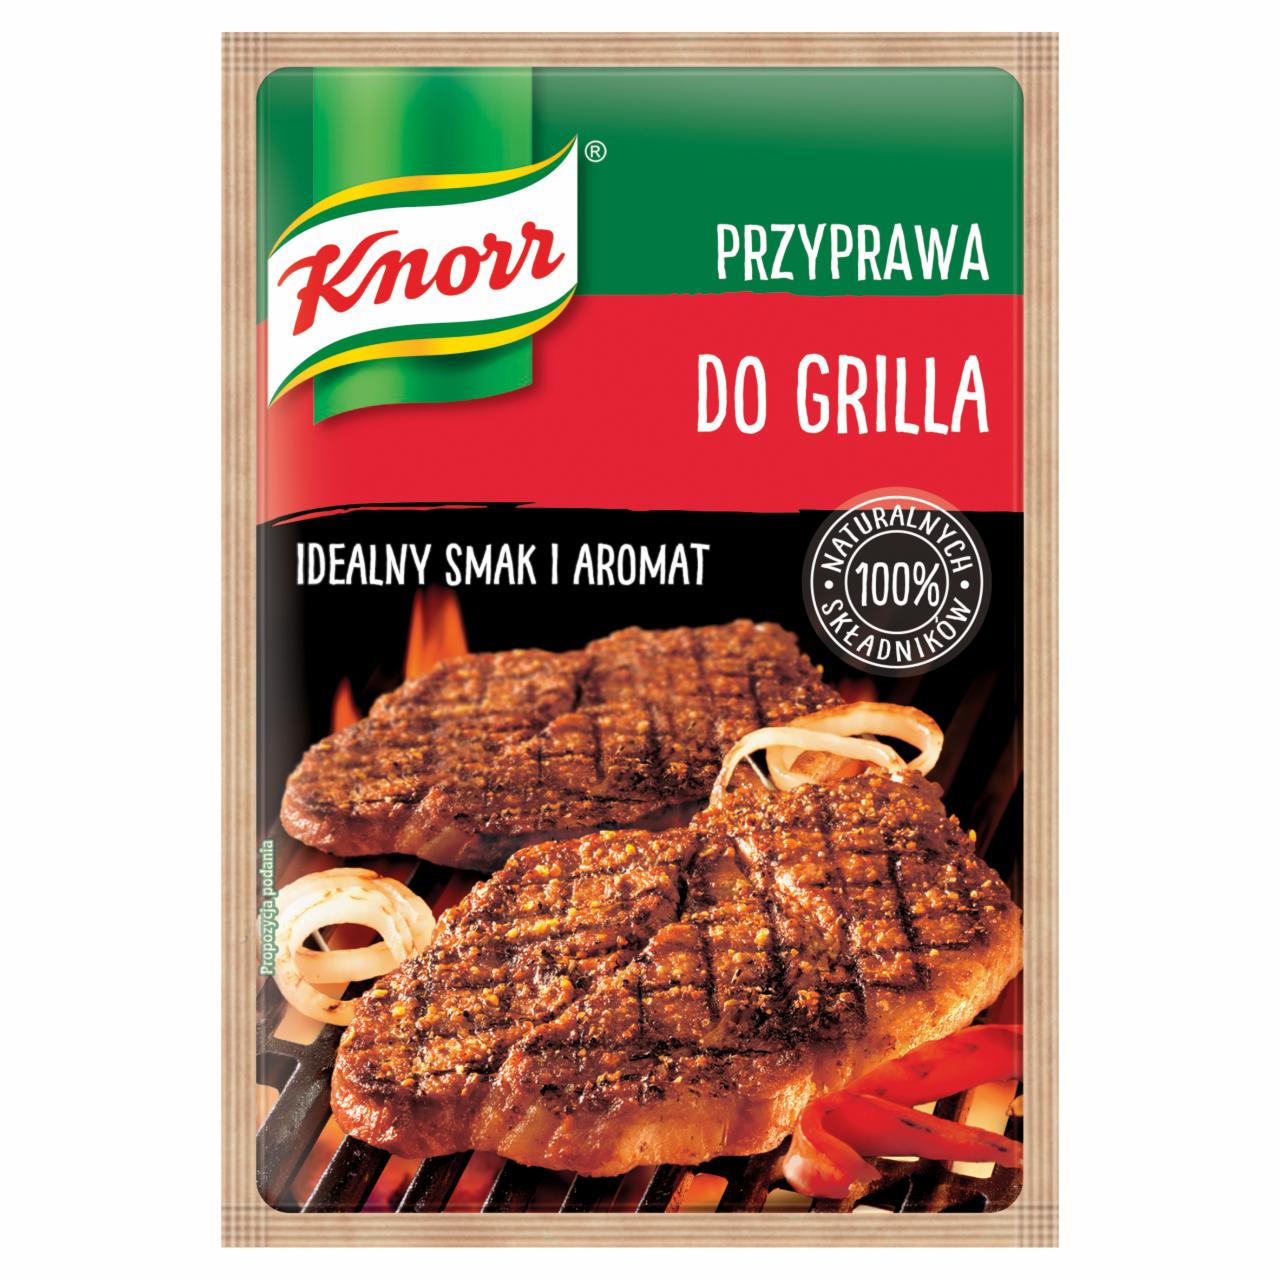 Zdjęcia - Knorr Przyprawa do grilla 23 g